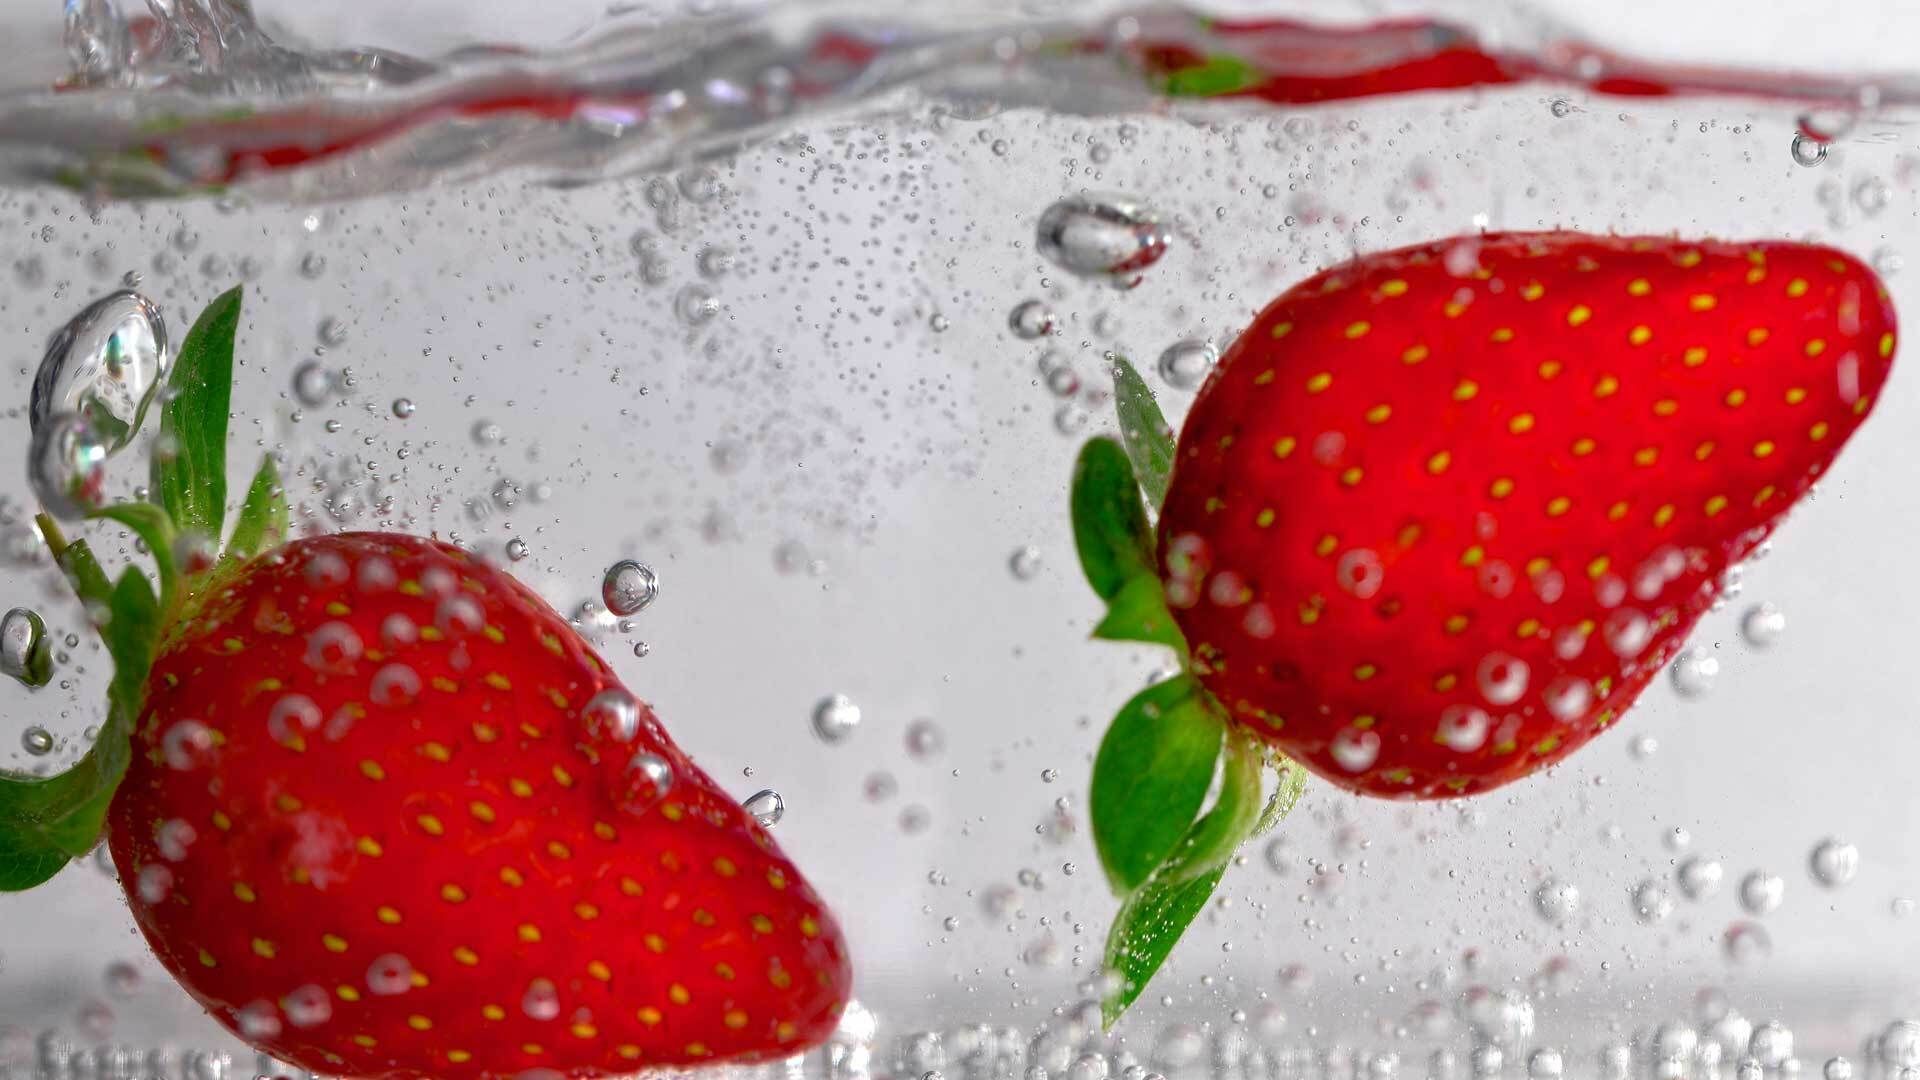 Erdbeeren: Kennst du schon den Salzwasser-Trick?